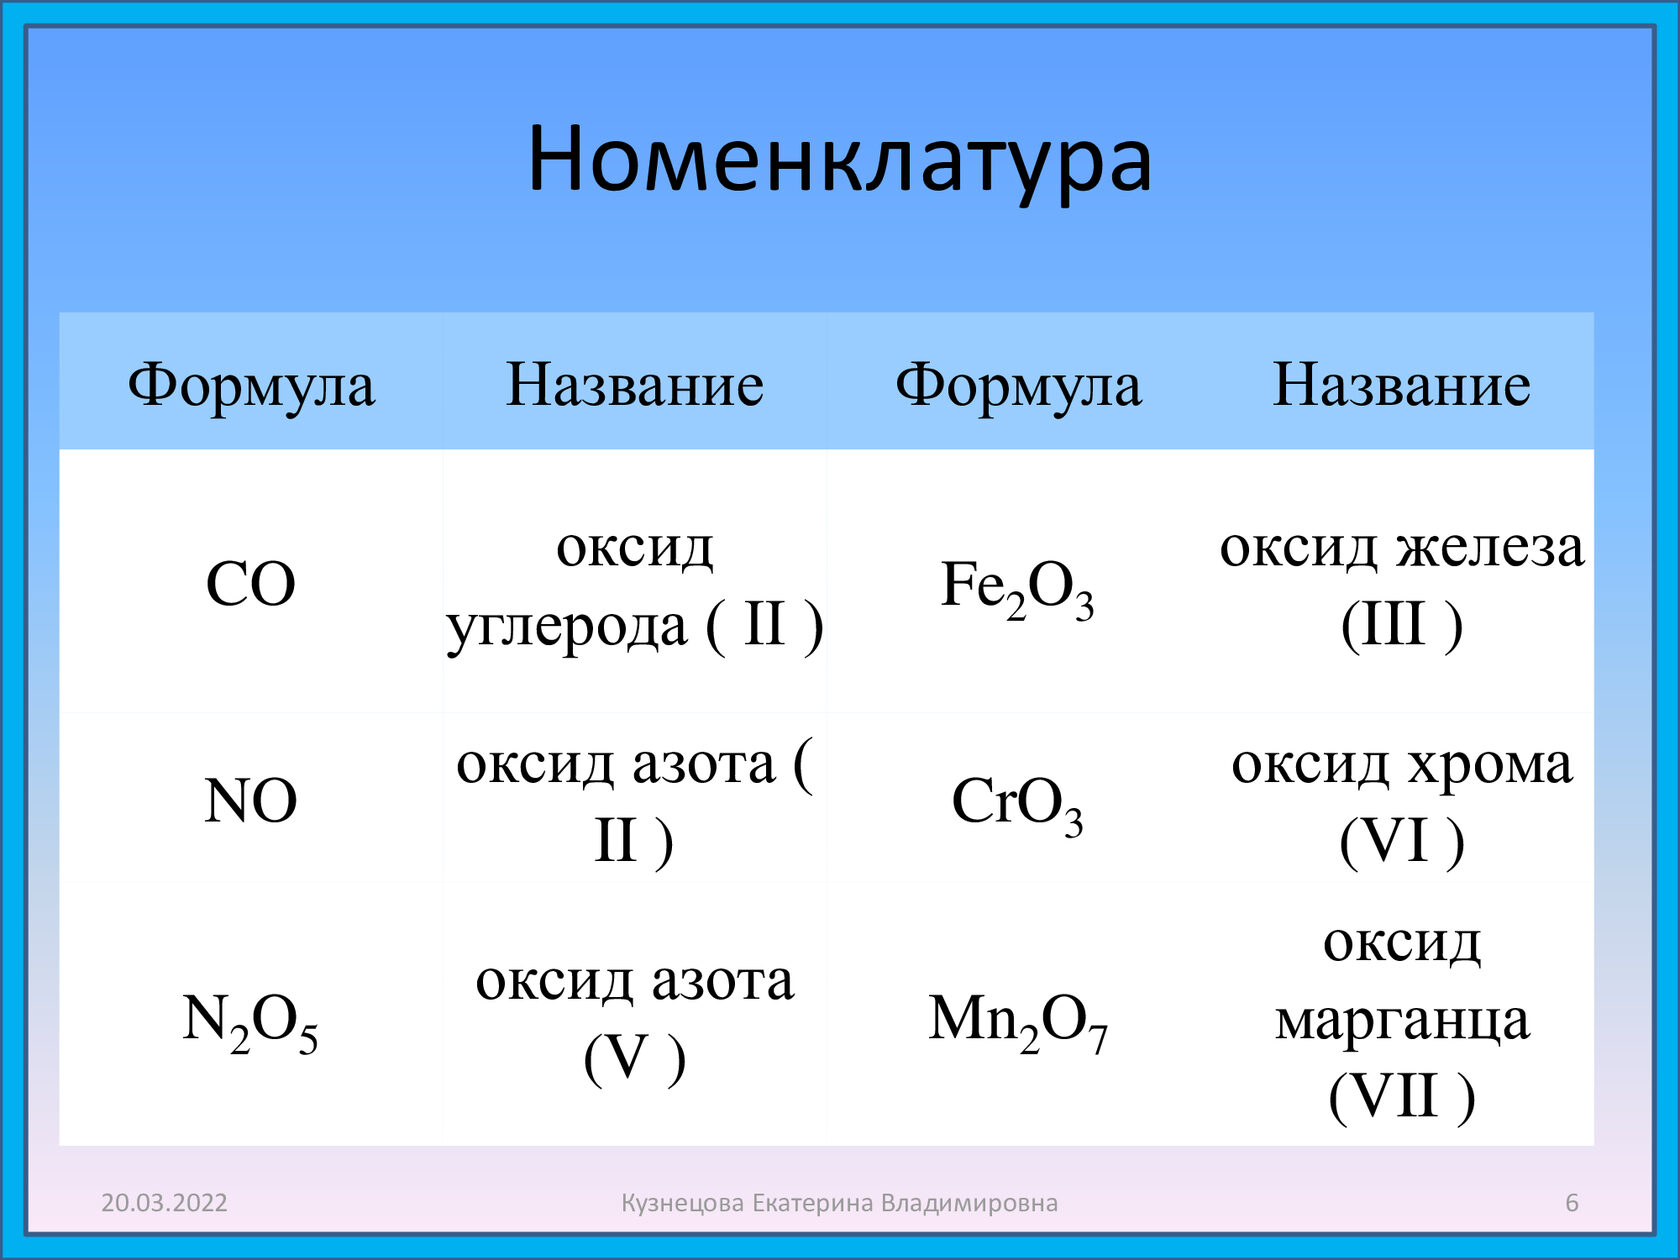 Оксиды элемента формула и название. Классификация неорганических веществ оксиды. Номенклатура оксидов. Оксид азота класс неорганических соединений. Основные классы неорганических соединений оксиды.